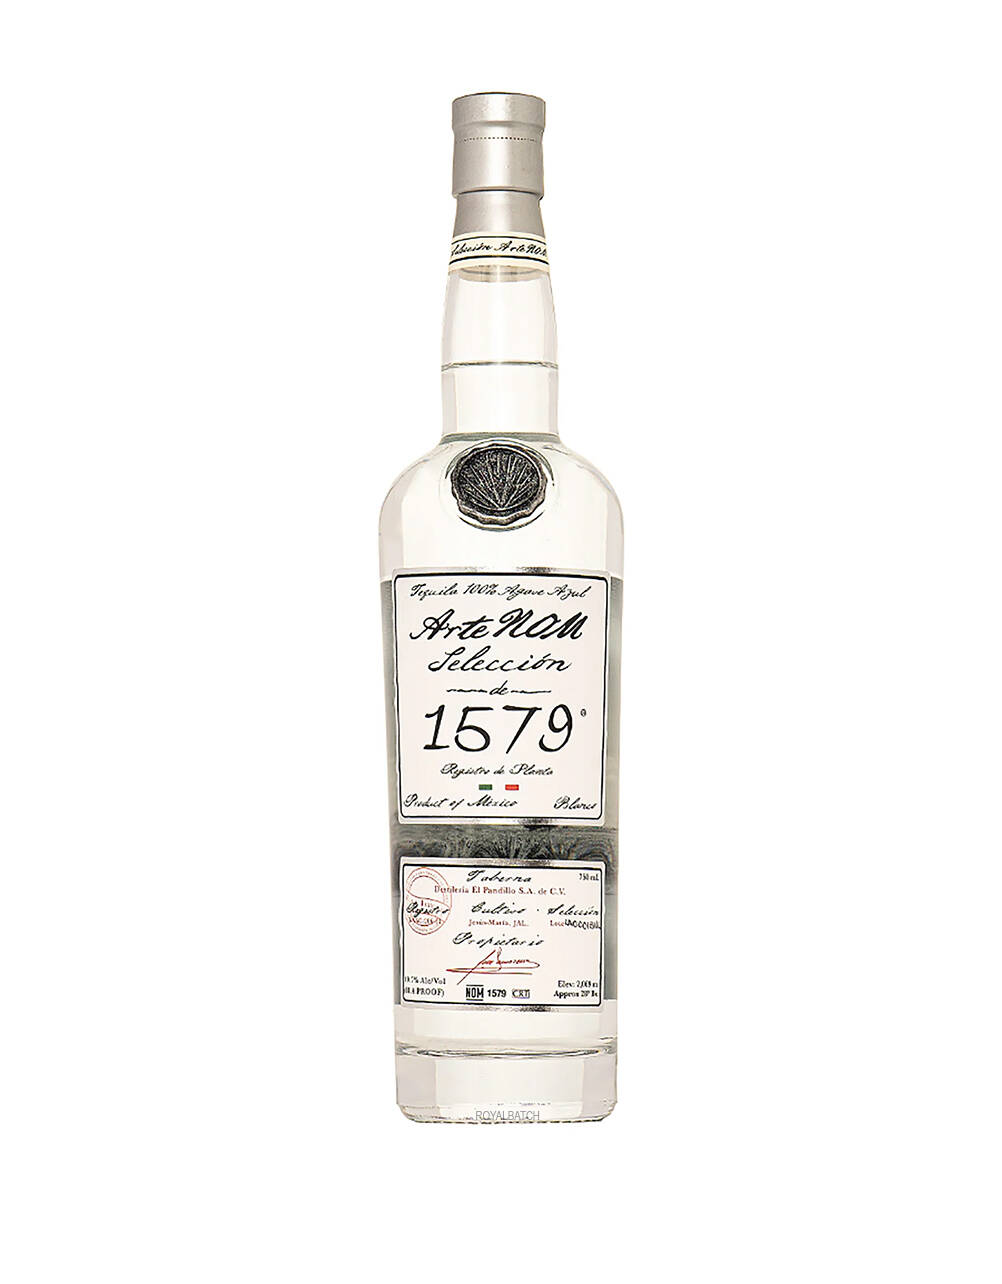 ArteNom Selection de 1579 Blanco Tequila